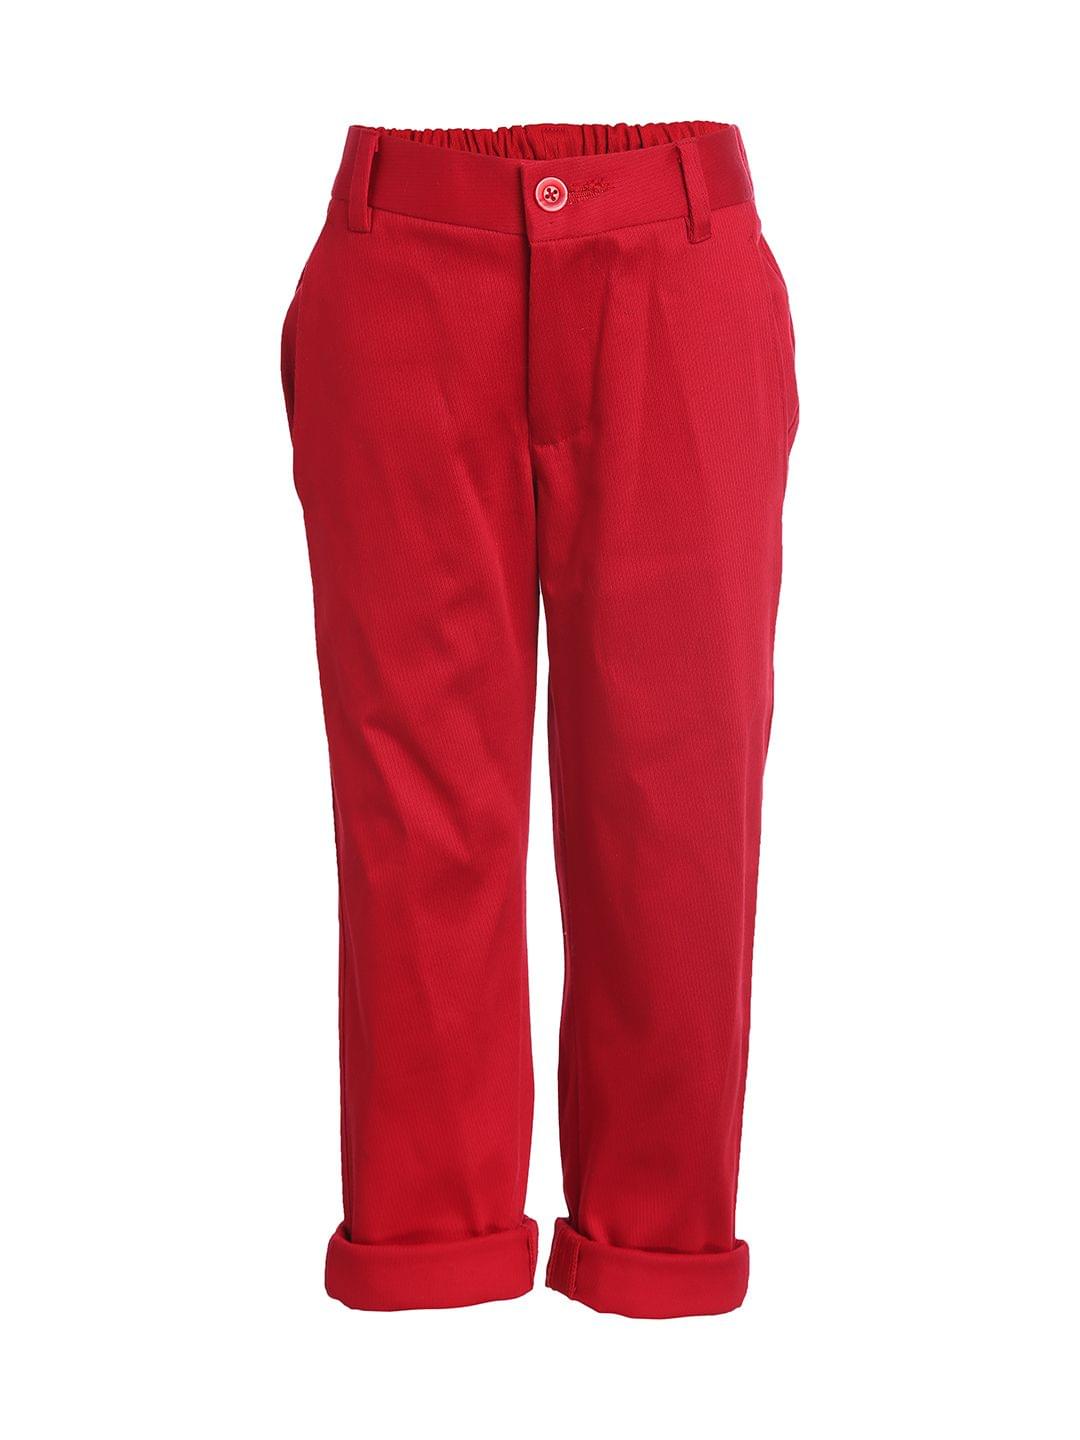 Boys Red Trouser